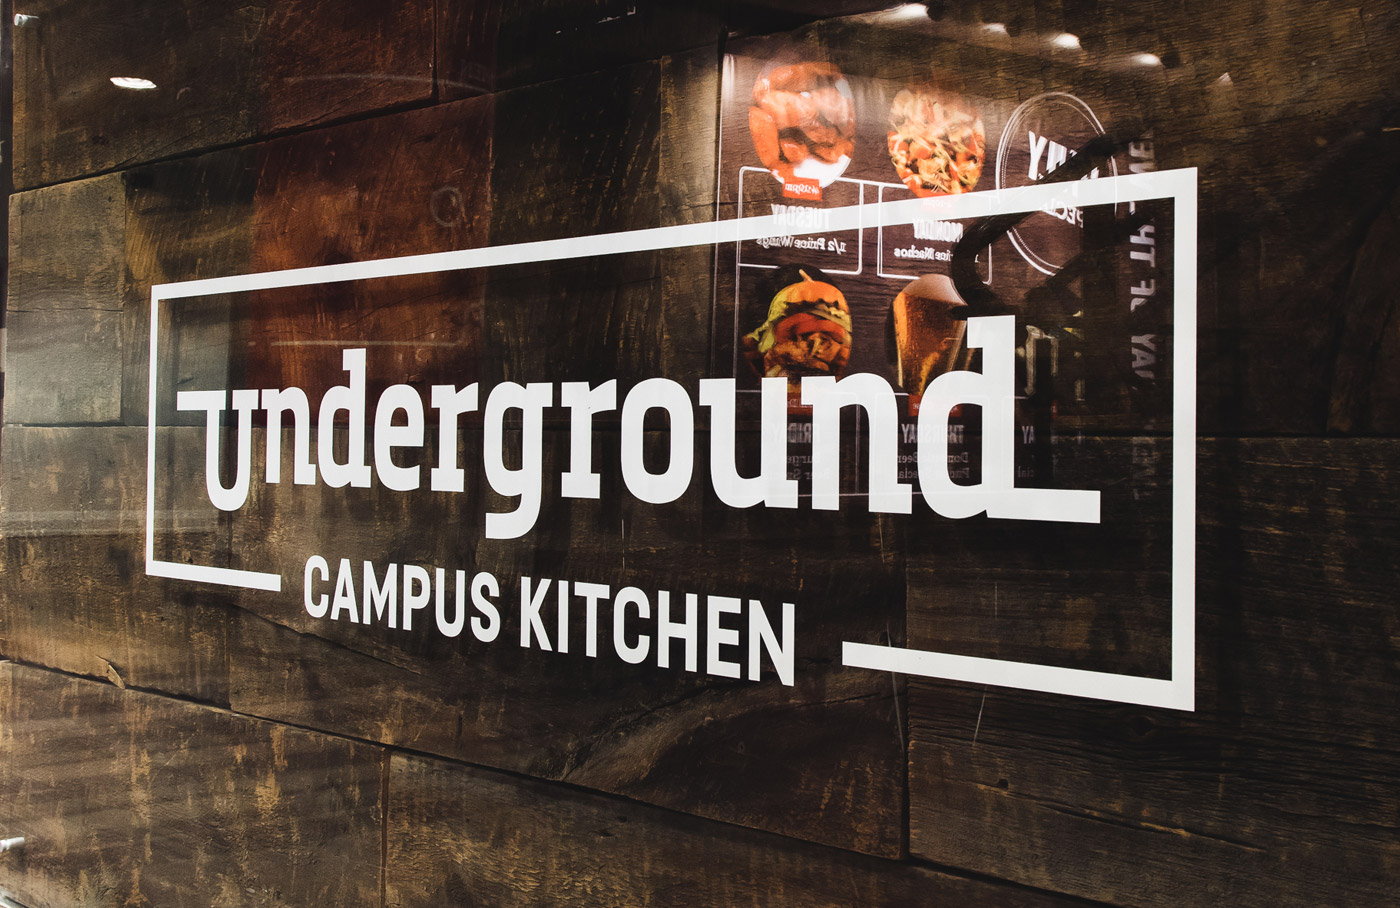 Underground Restaurant Branding